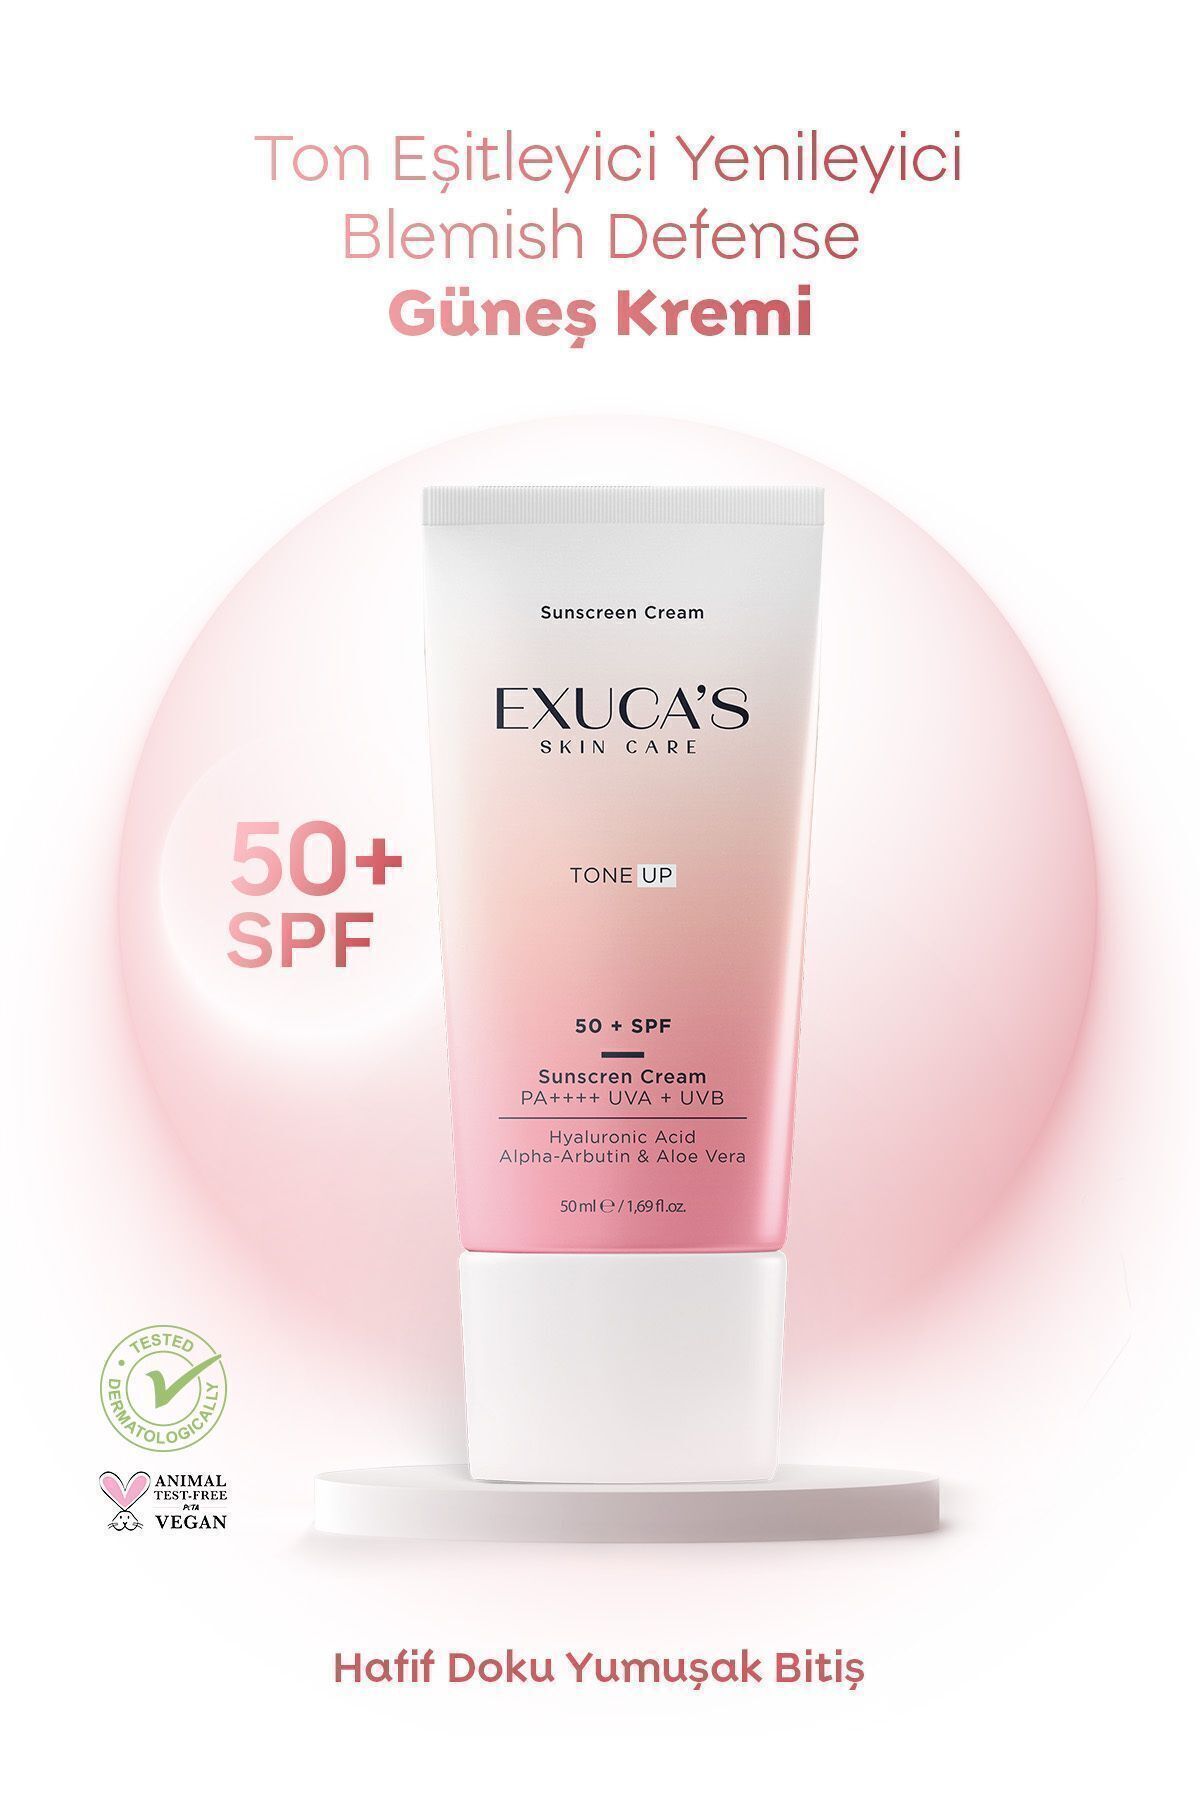 EXUCAS Ton Eşitleyici Yenileyici Blemish Defense Güneş Kremi Karma/ Yağlı Ciltler| Sunscreen Cream 50 Spf